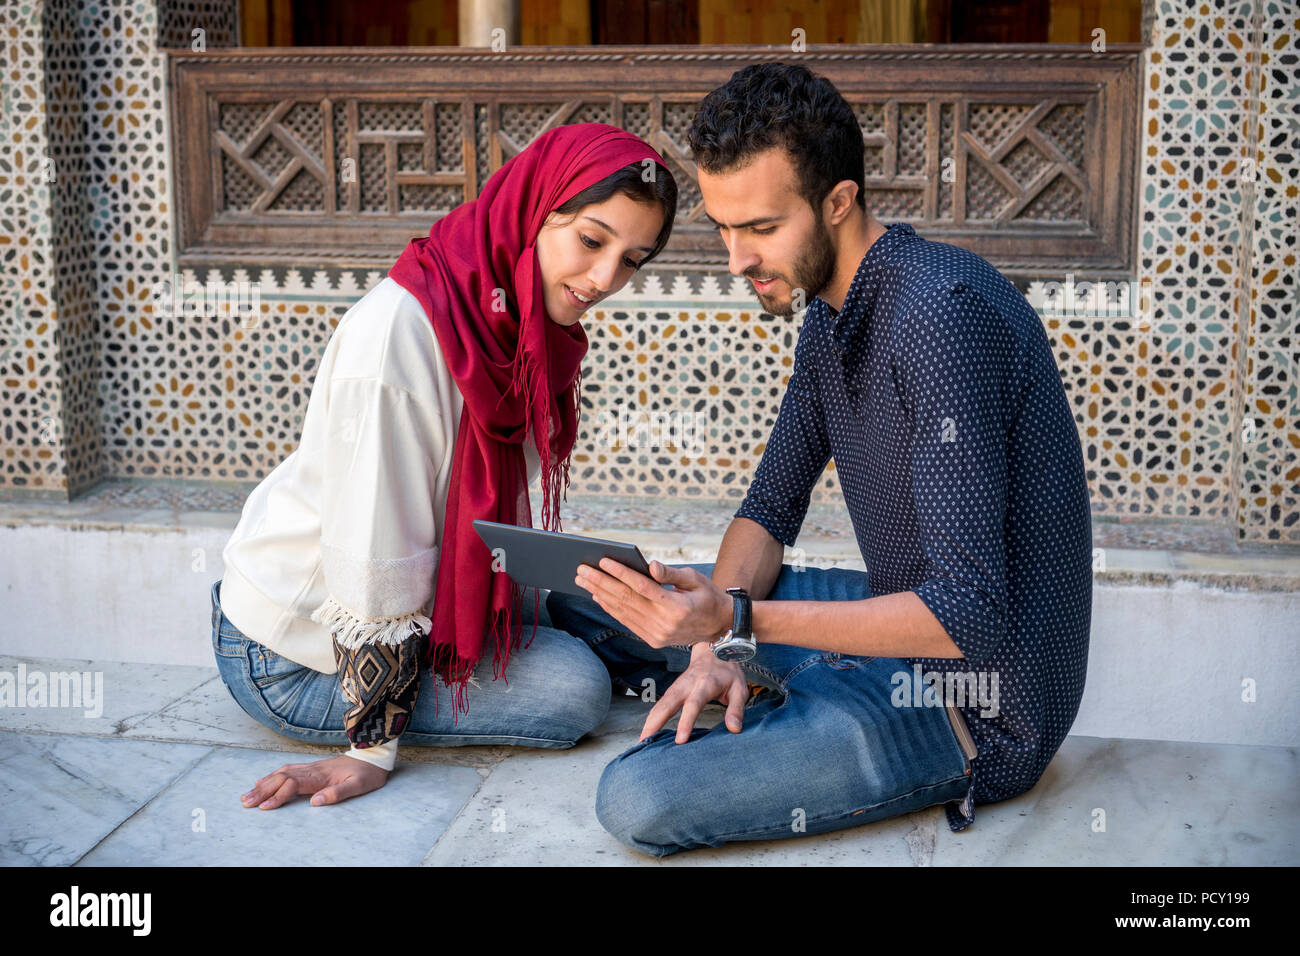 Junge muslimische Paare in Beziehung Lächeln während der Arbeit auf dem Tablet im traditionellen arabischen Ambient Stockfoto